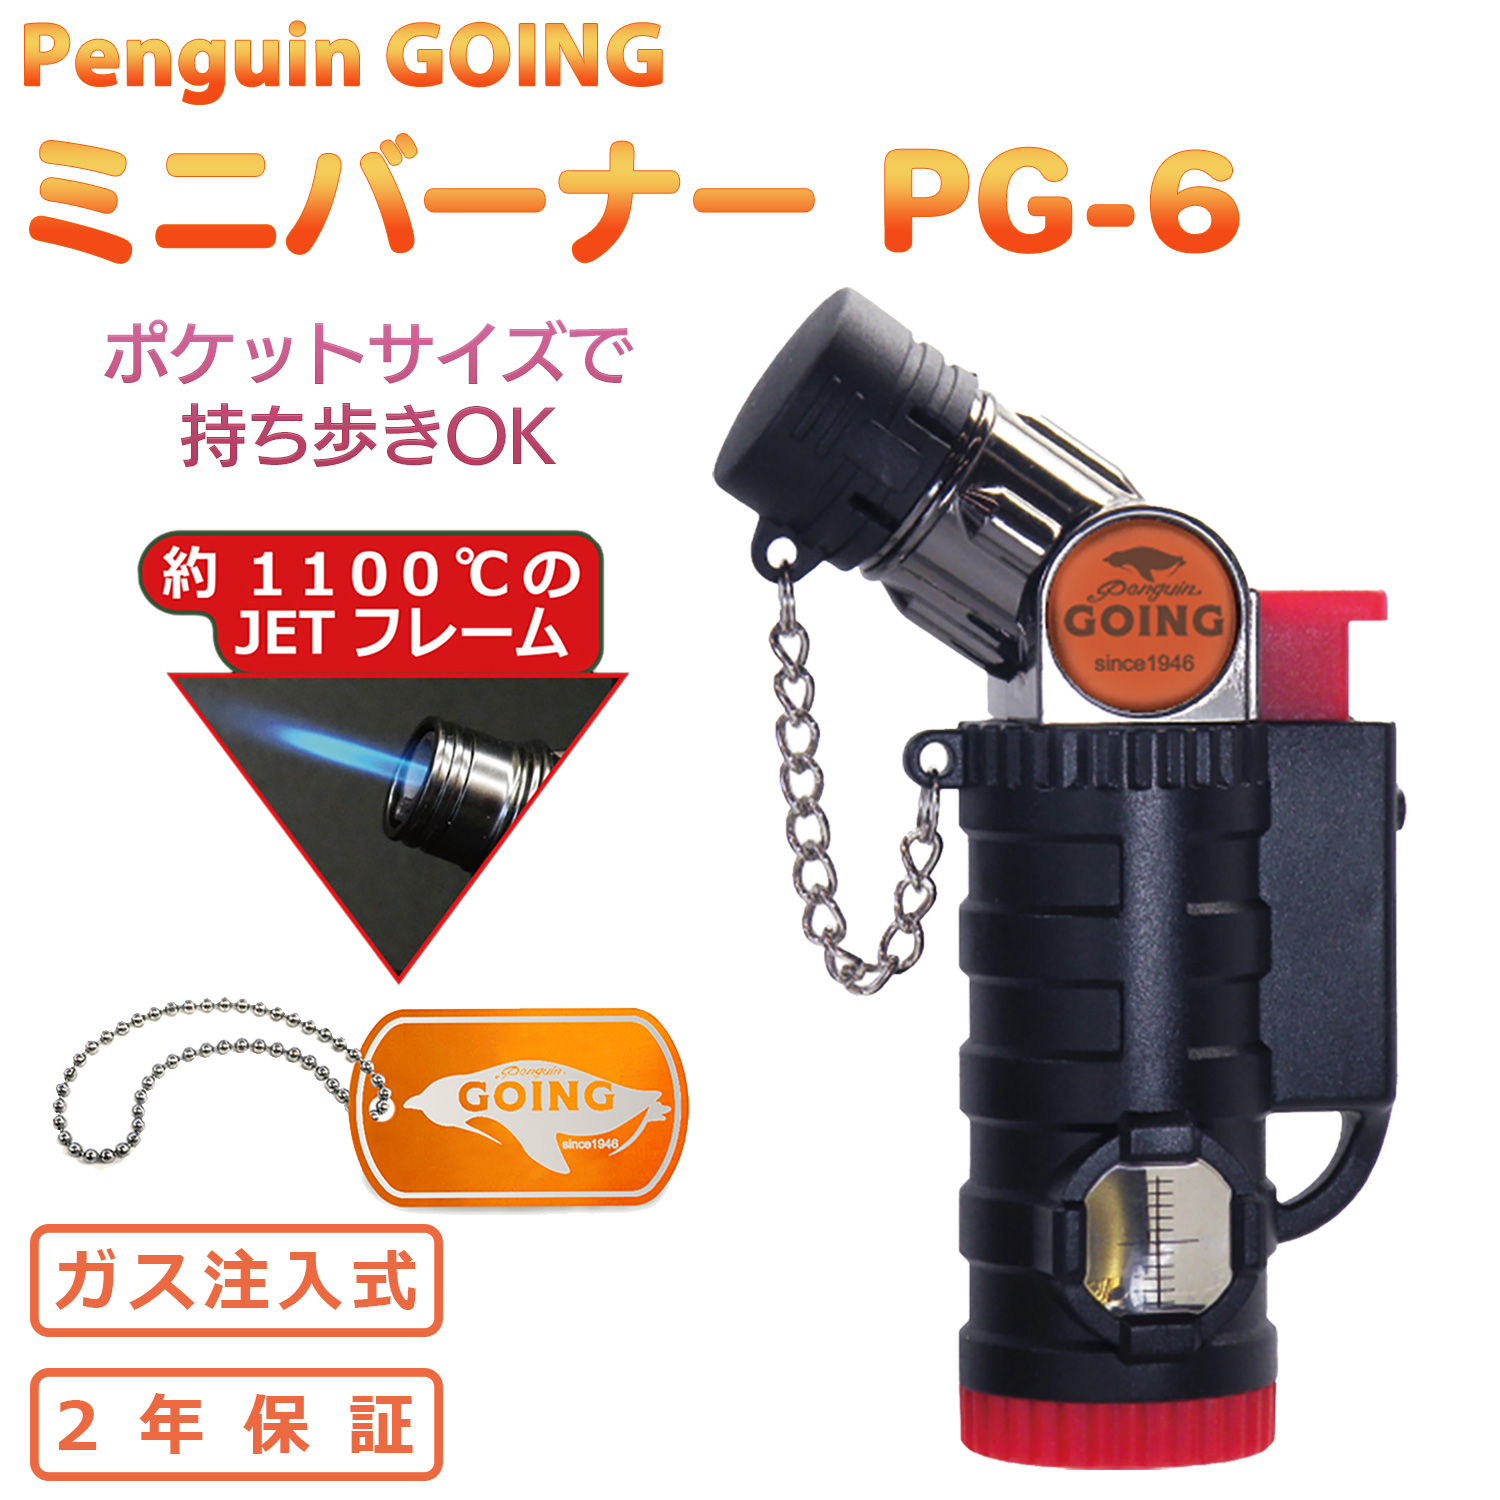 送料無料 ペンギン ゴーイング ミニバーナー PG-6 ‐ガス注入式 安全ロック付き ガスライター キャンプ 着火 ライター アウドドア PENGUIN GOING